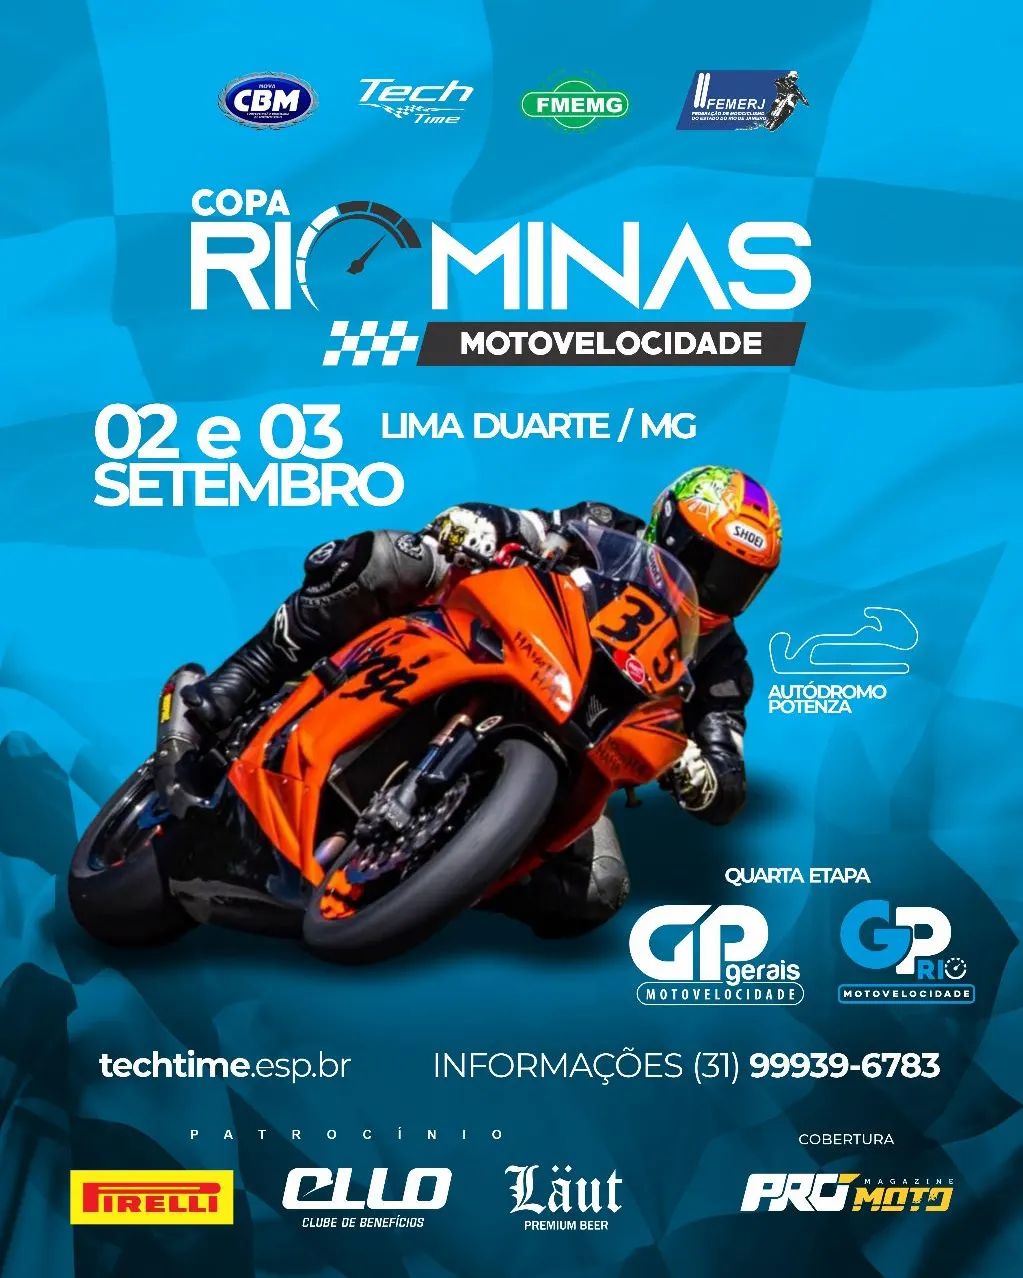 Federação de Motociclismo do Estado de Minas Gerais